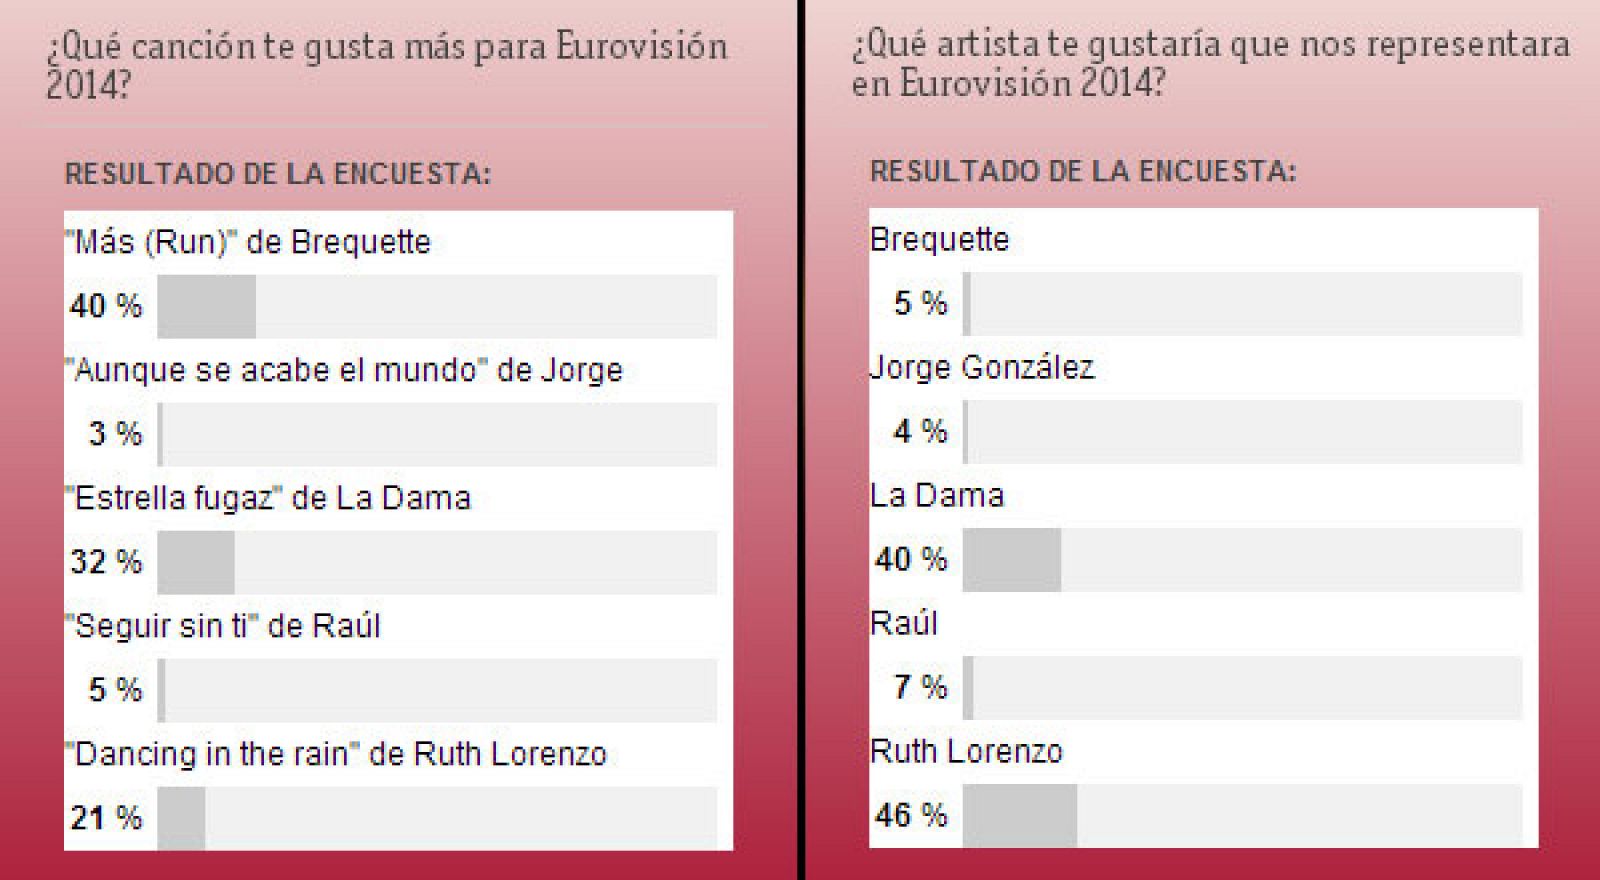 Resultados de las dos encuestas publicadas en RTVE.es